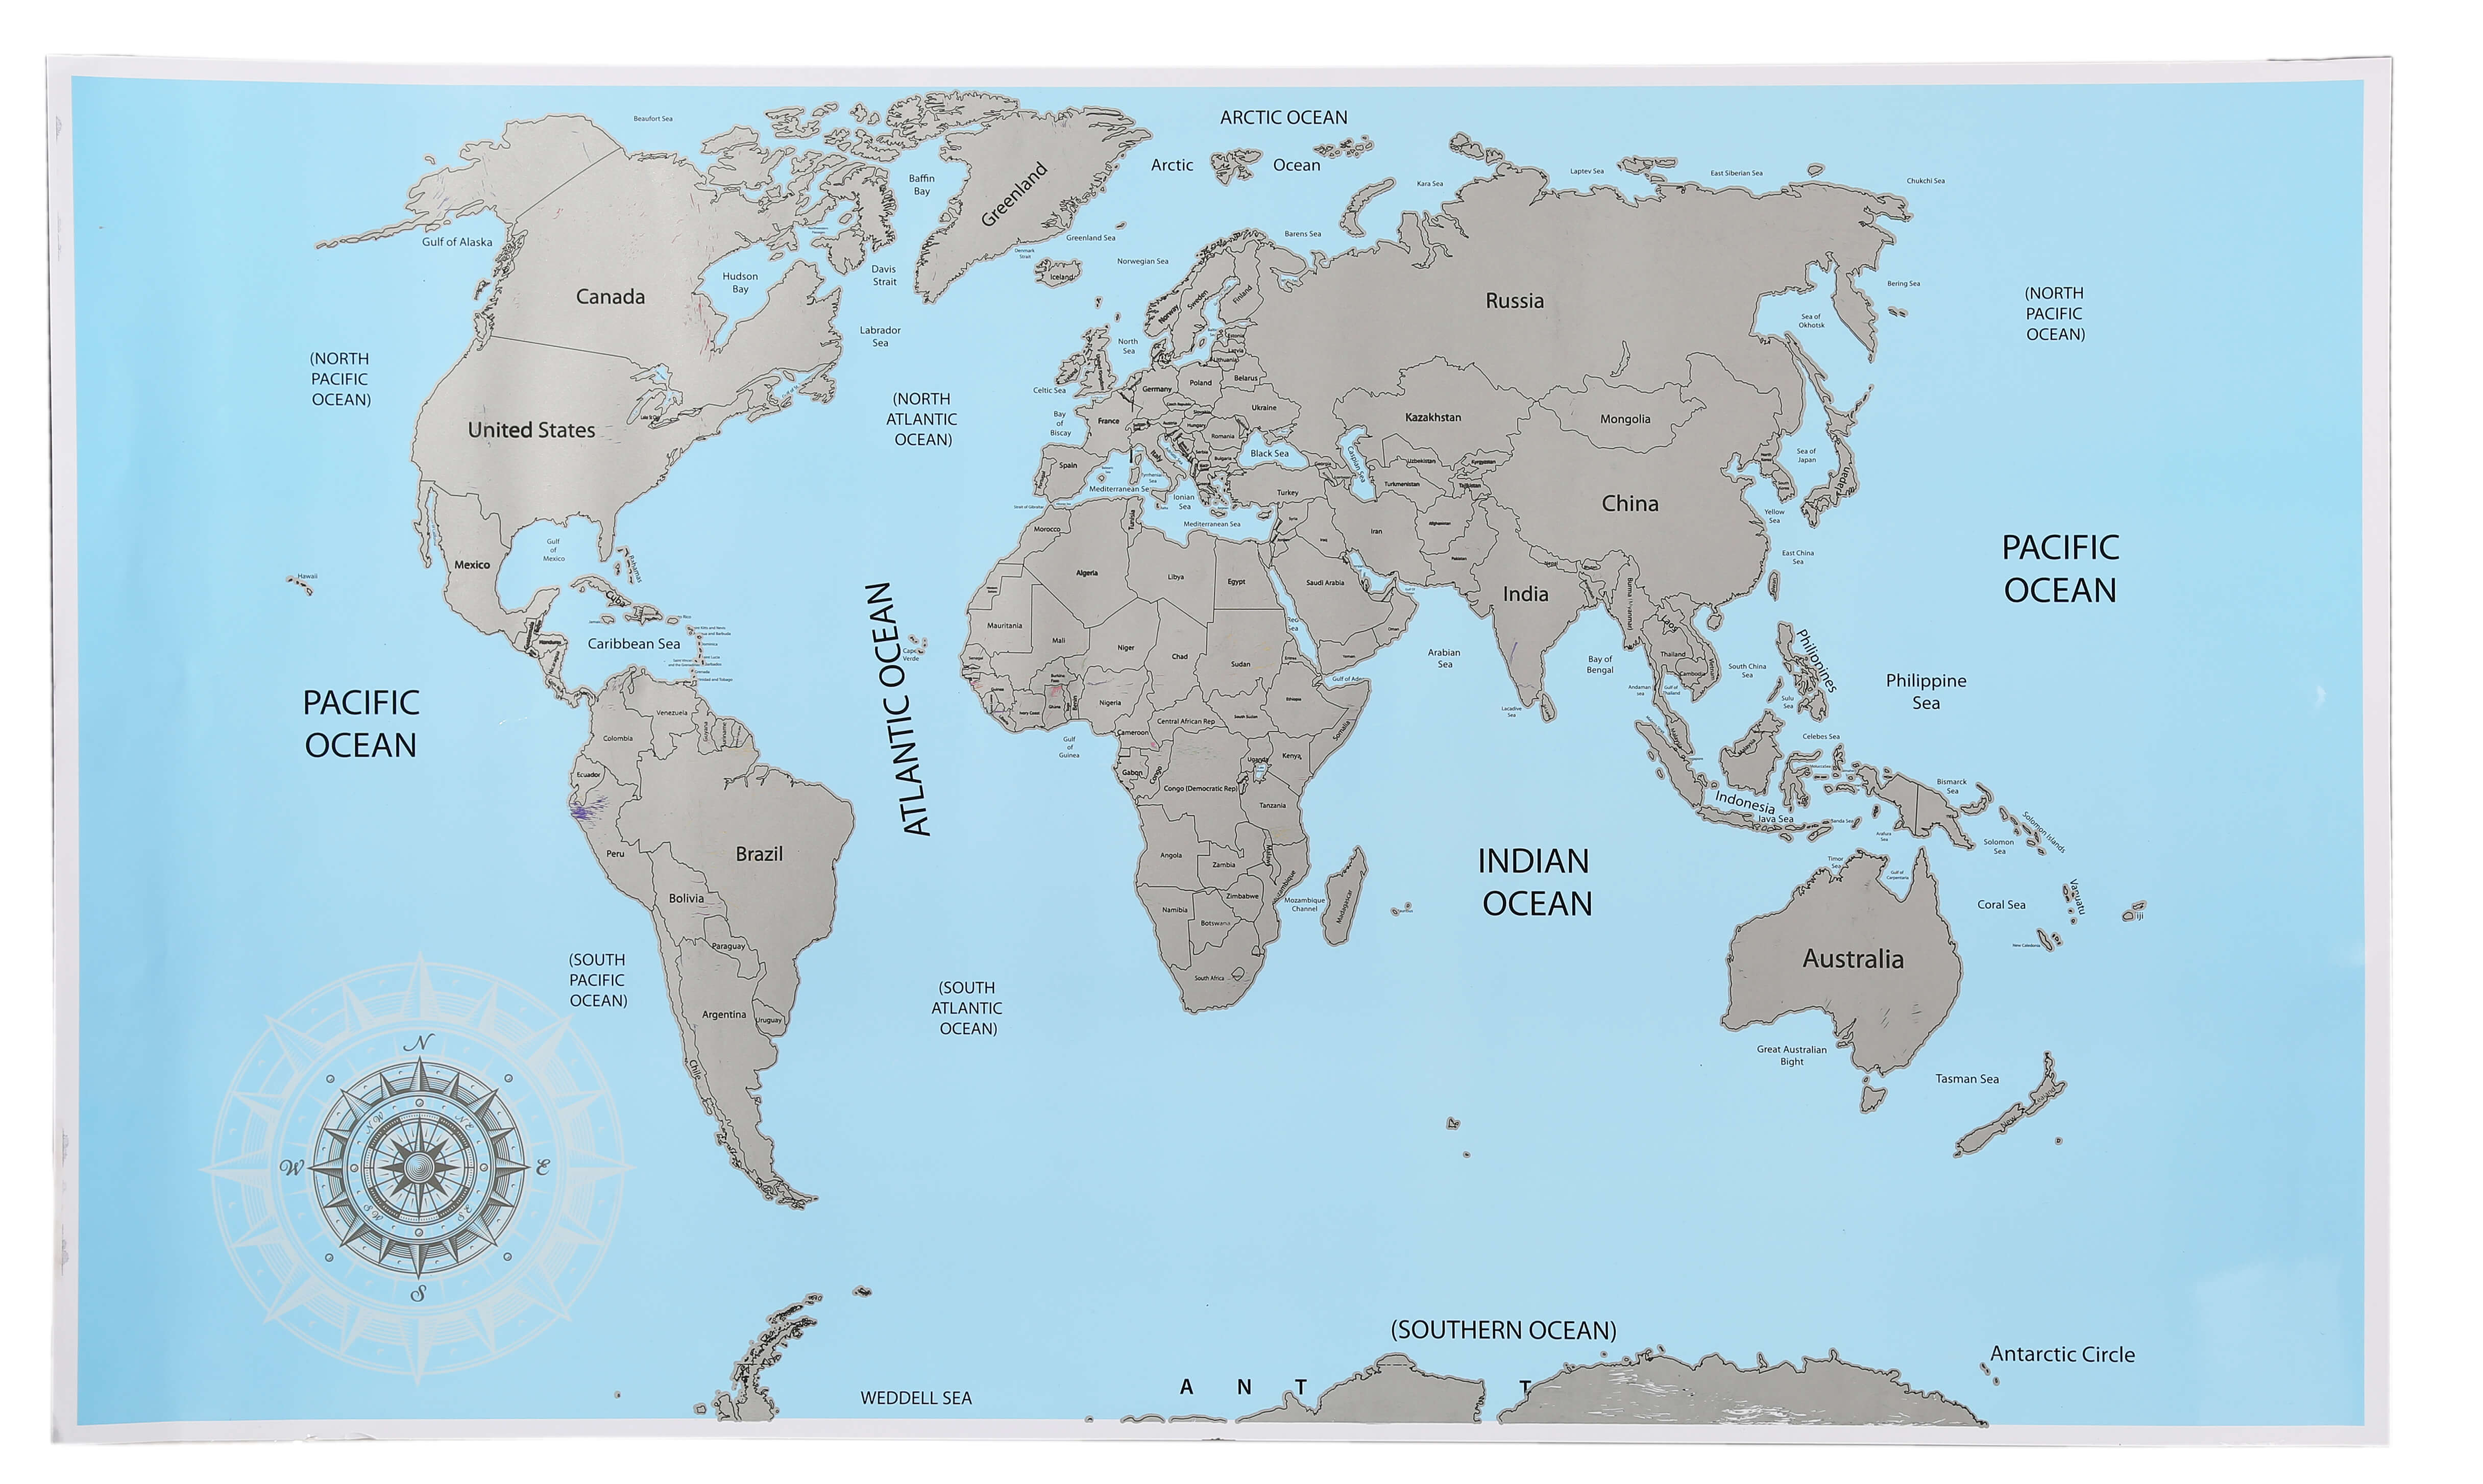 Scratch Map Weltkarte zum Rubbeln